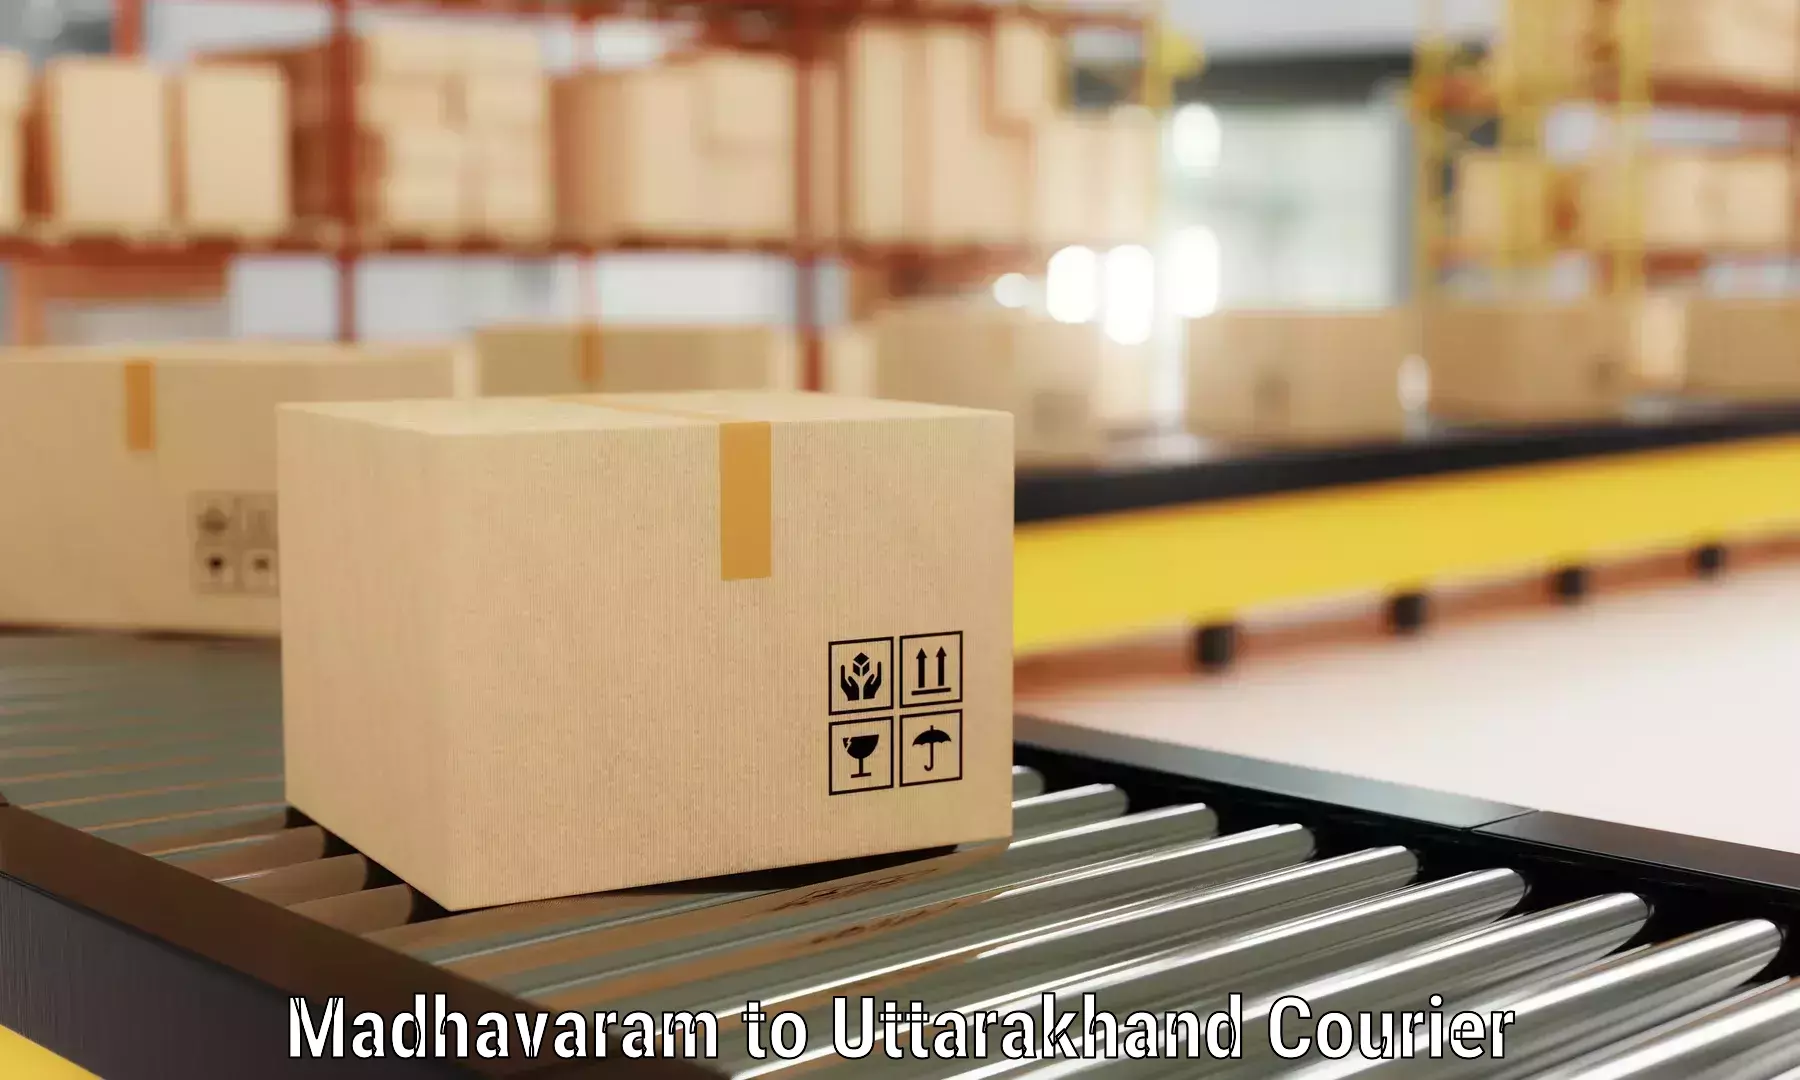 Furniture shipping services in Madhavaram to Sitarganj